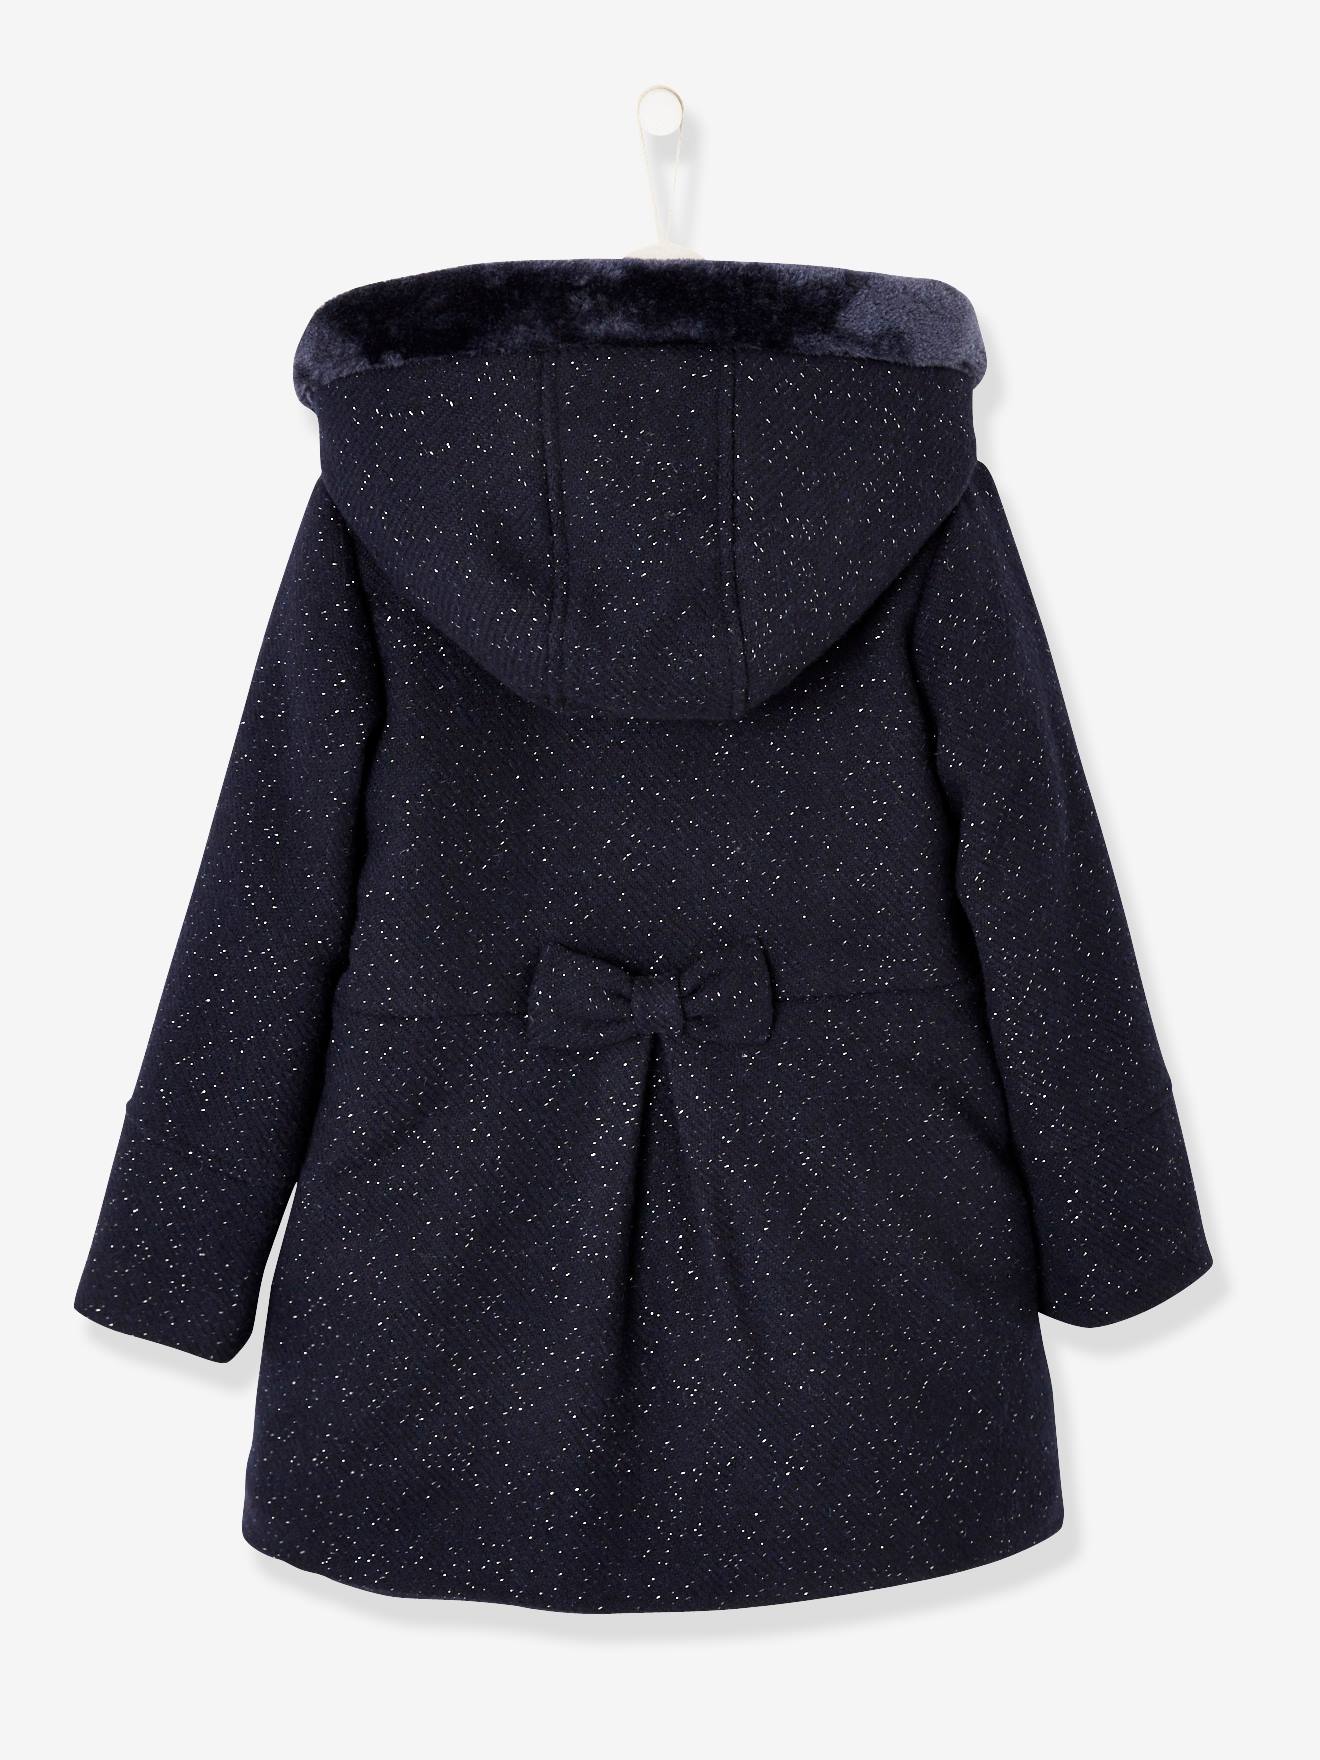 Abrigo niña de lana violeta oscuro liso - Vertbaudet